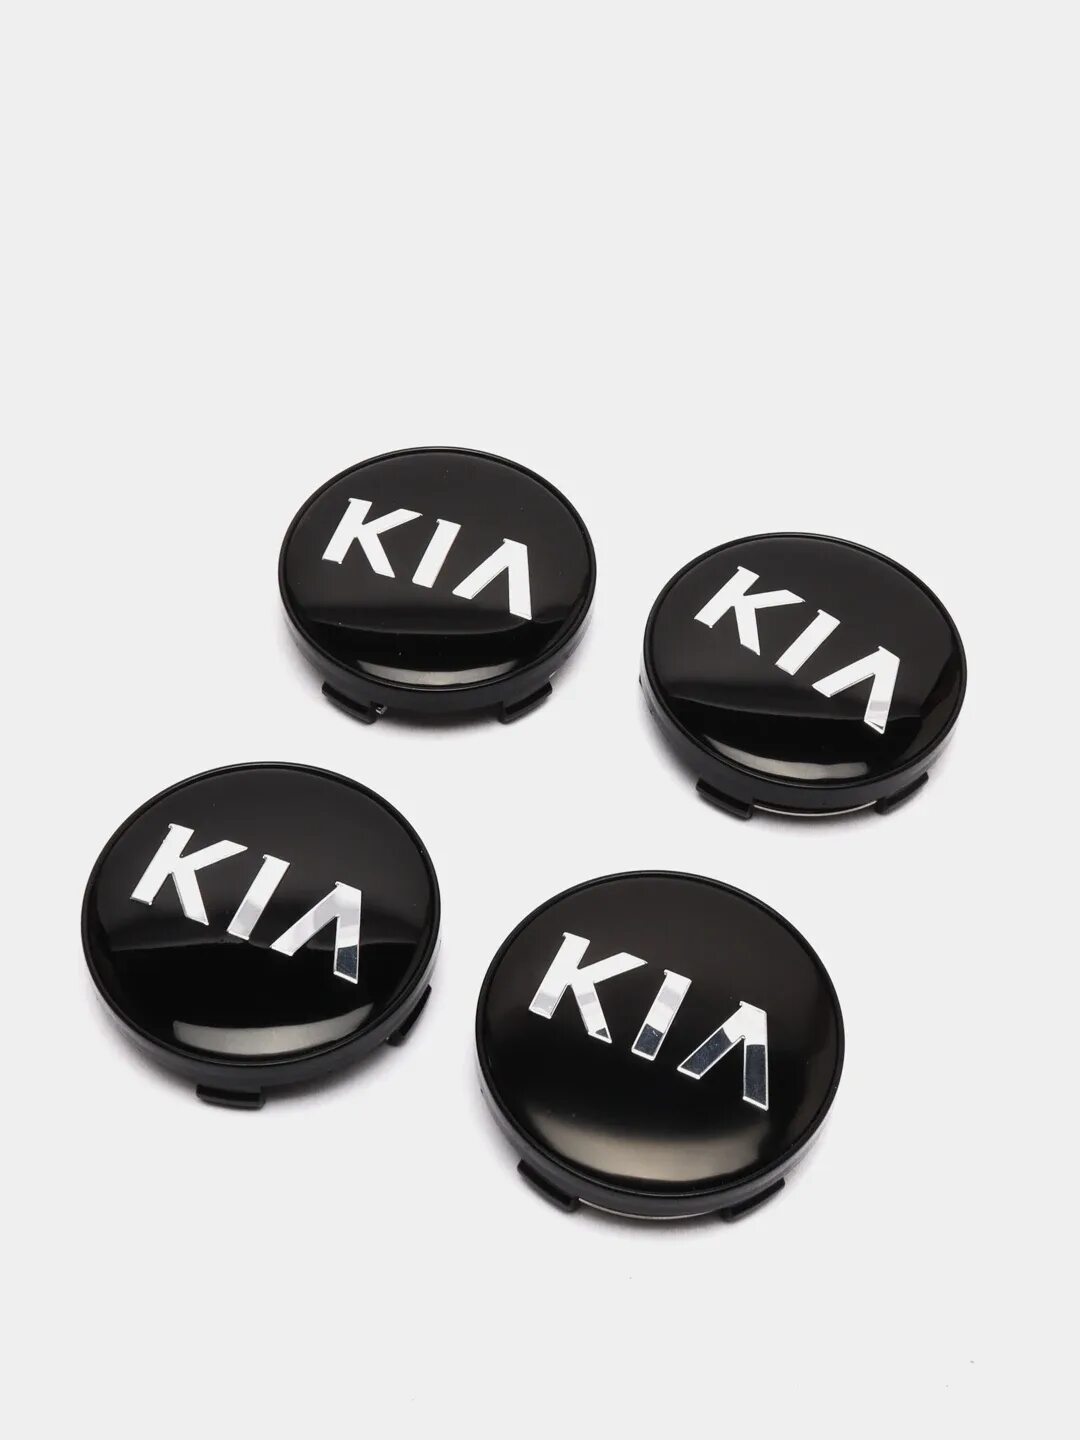 Колпак заглушка на литой диск Kia. Колпачок заглушка центрального отверстия диска колесного Киа. Колпачки заглушки на литые диски Киа соул 2017. Заглушки на литые диски Киа.